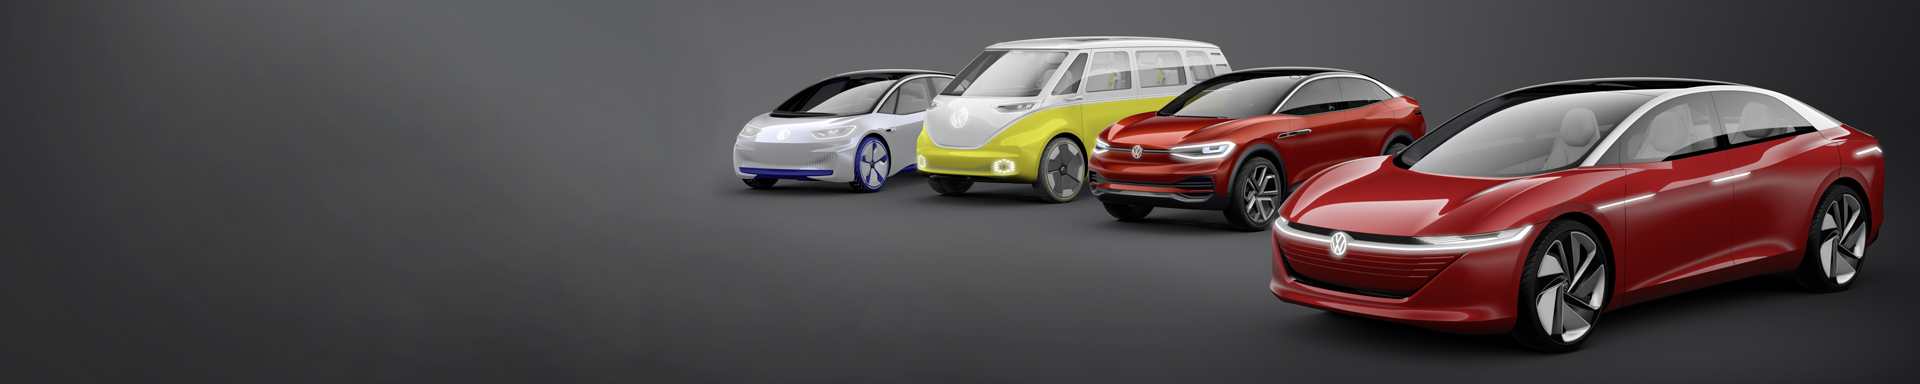 Volkswagen elektrisch rijden I.D. modellen